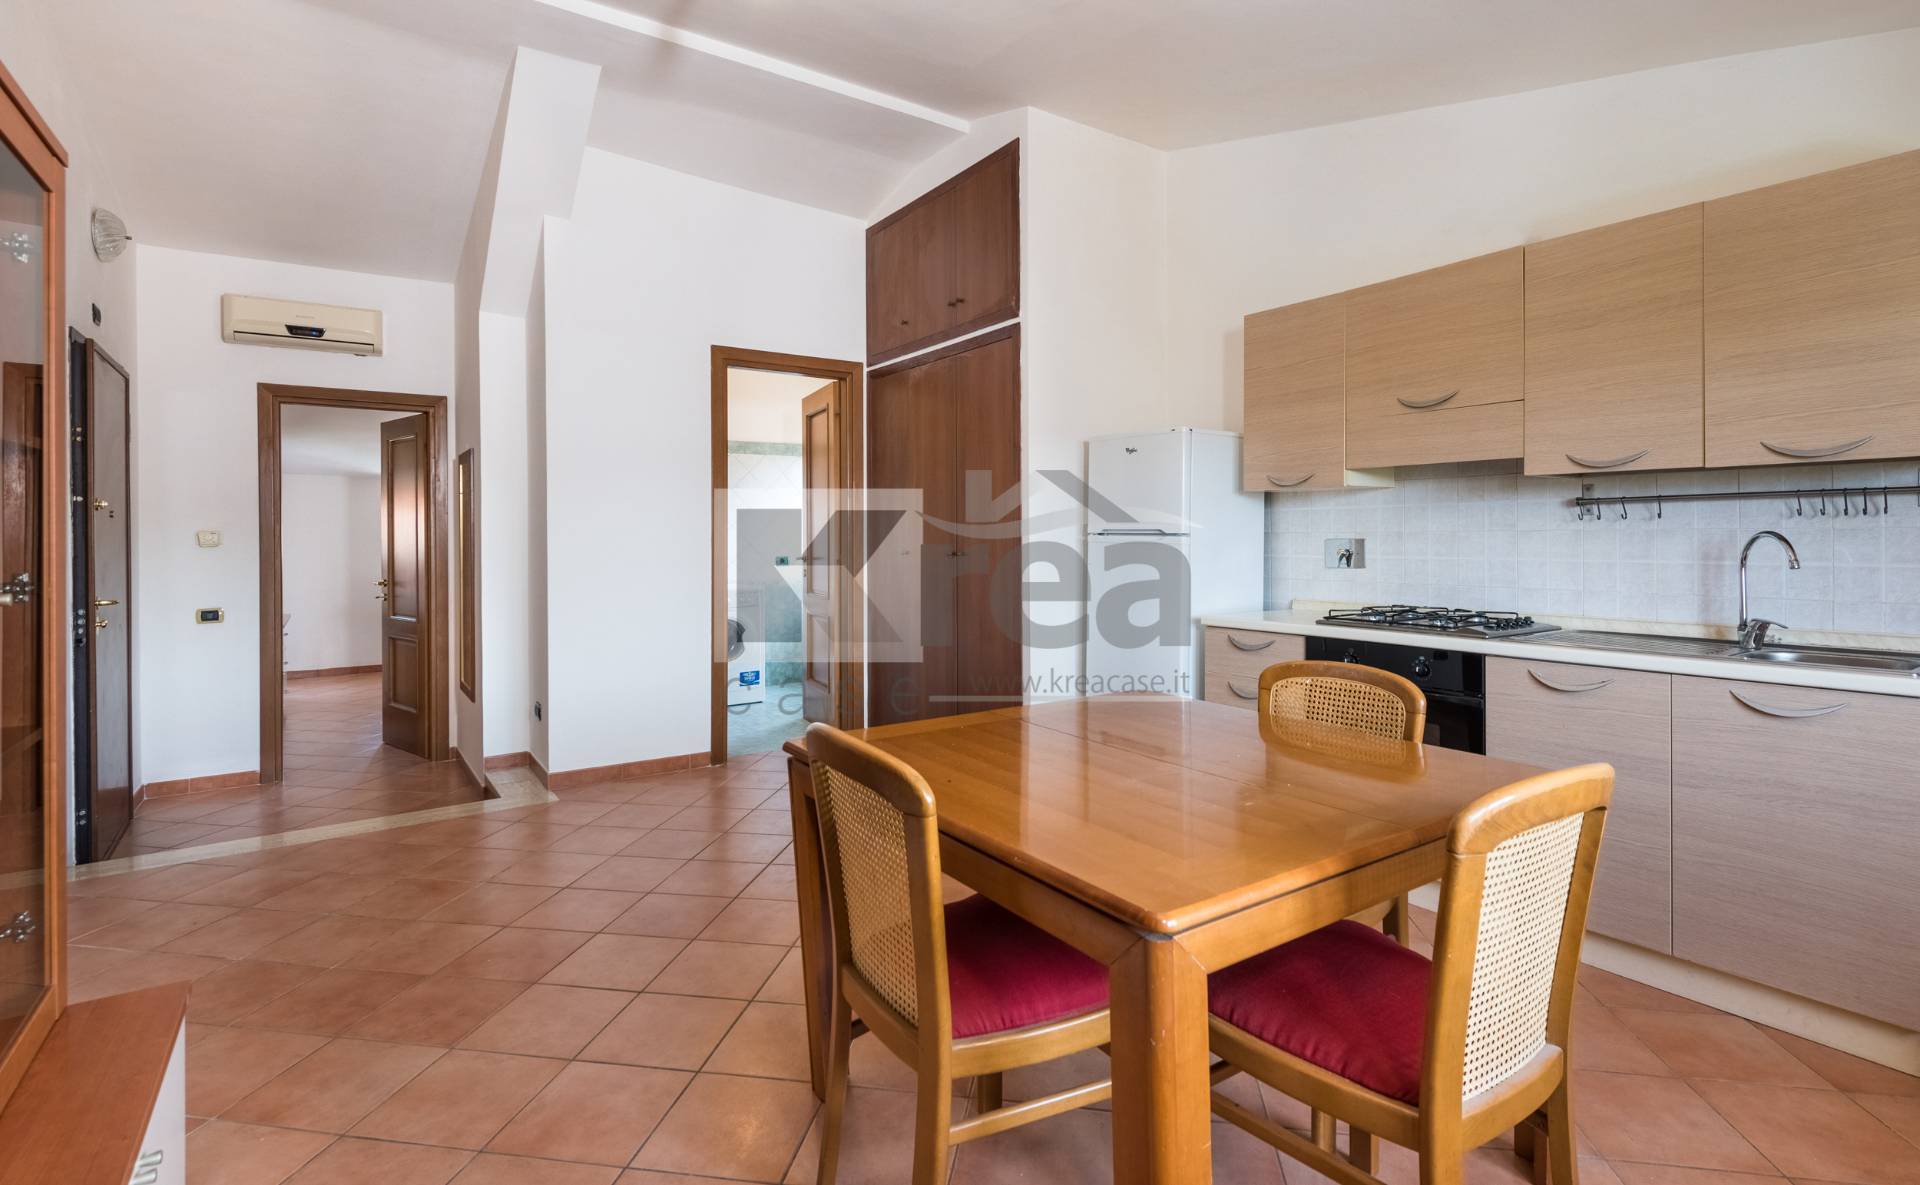 Appartamento in vendita a Ciampino, 2 locali, zona Località: Centro, prezzo € 115.000 | CambioCasa.it